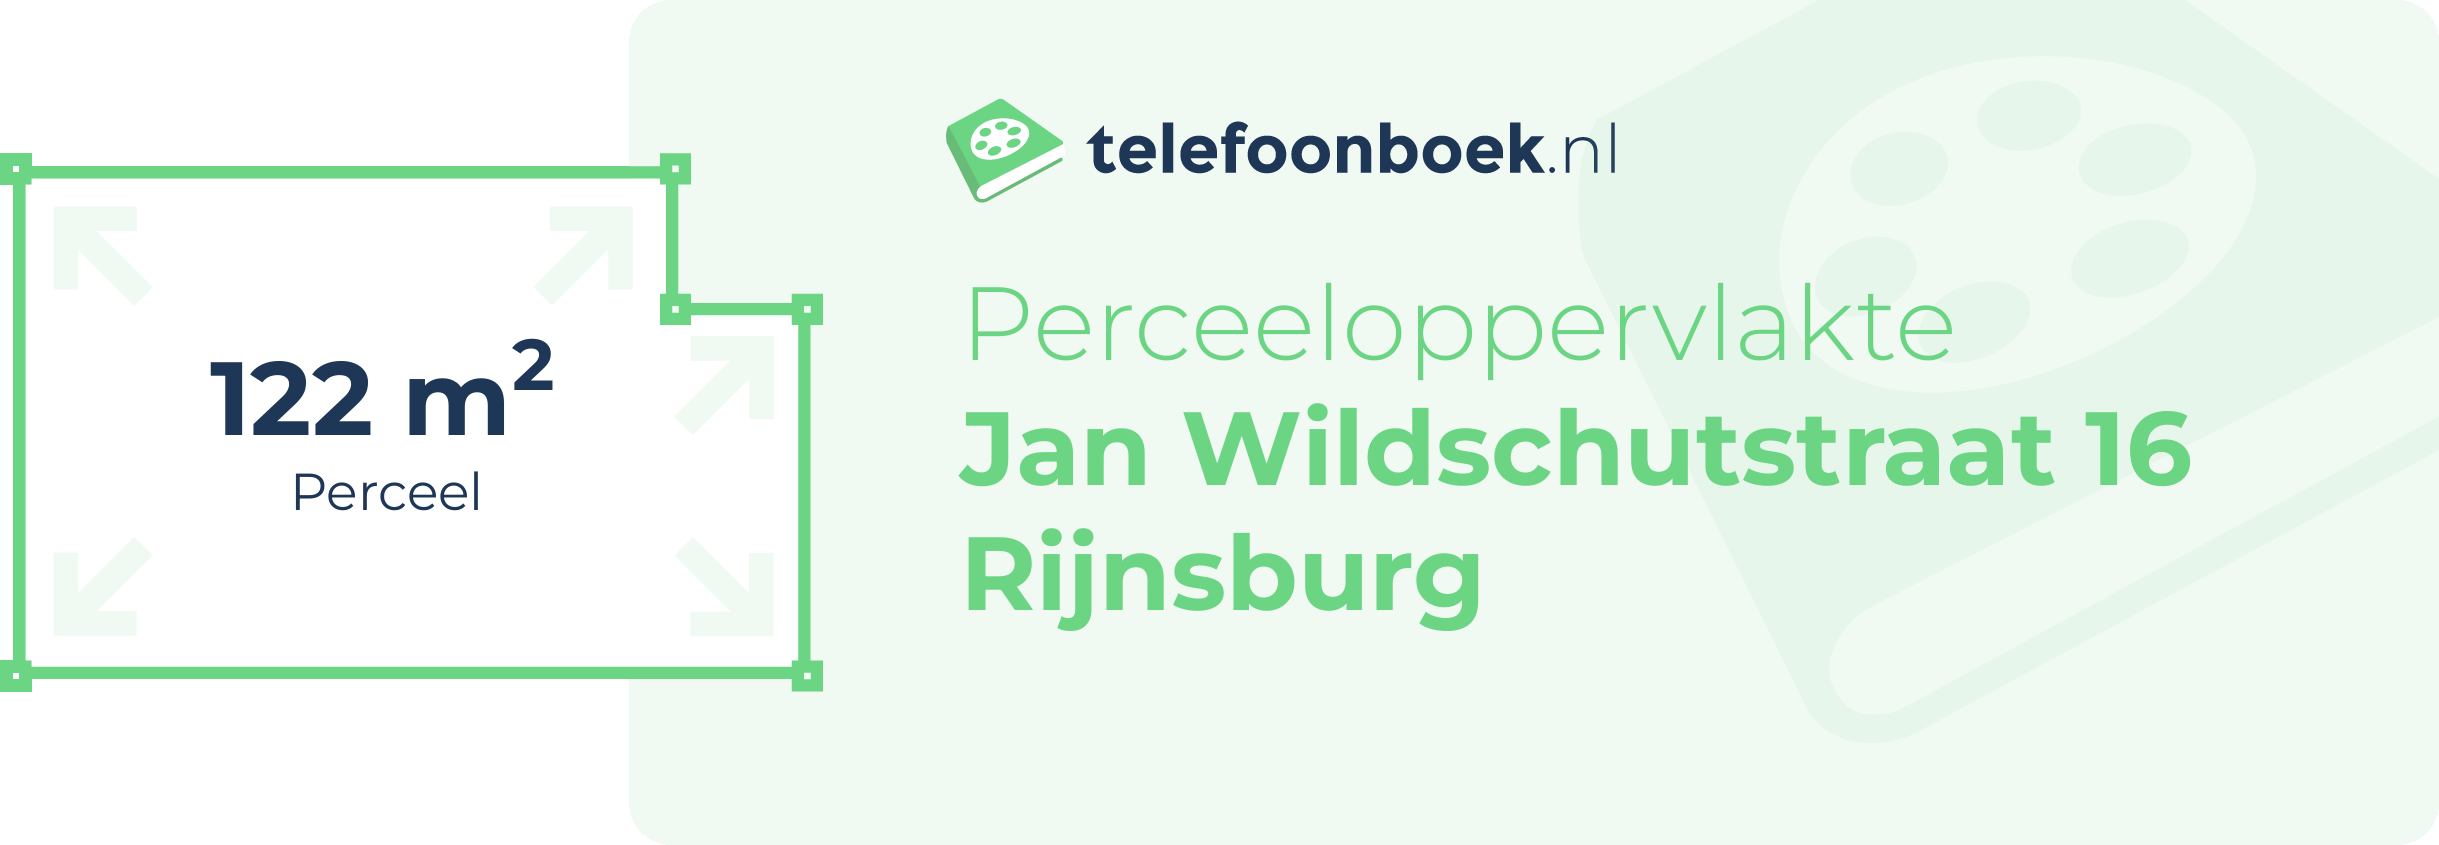 Perceeloppervlakte Jan Wildschutstraat 16 Rijnsburg